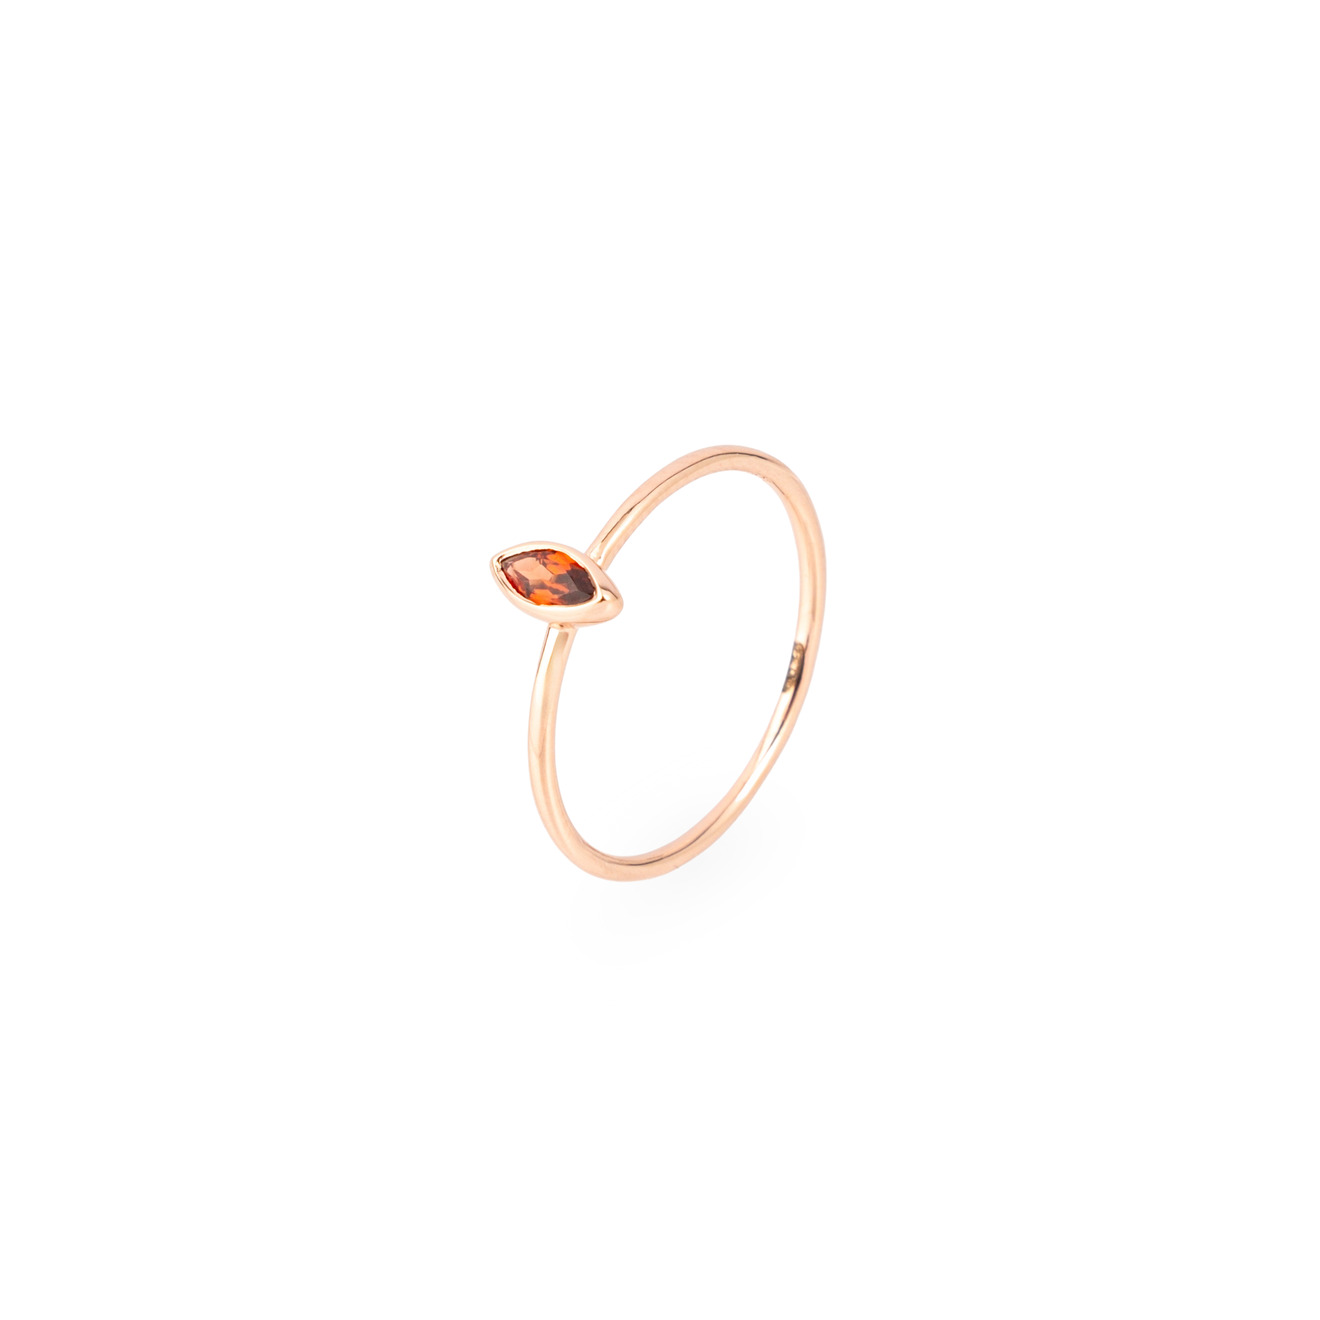 Wisteria Gems Позолоченное кольцо с гранатом в форме ромба wisteria gems позолоченное кольцо с персиковым лунным камнем в форме сердечка